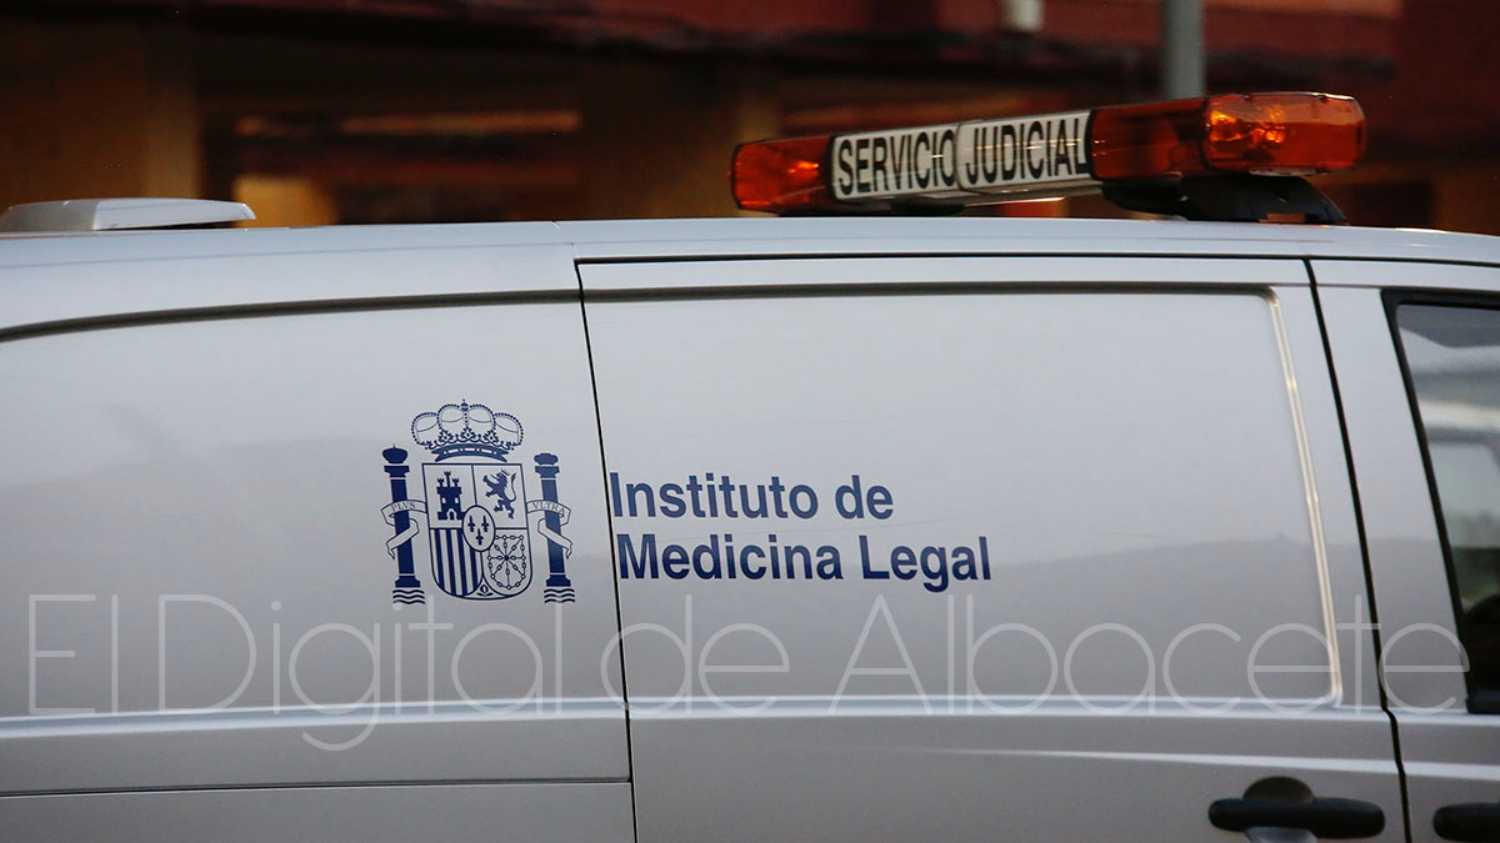 Vehículo del Instituto de Medicina Legal / Imagen de archivo